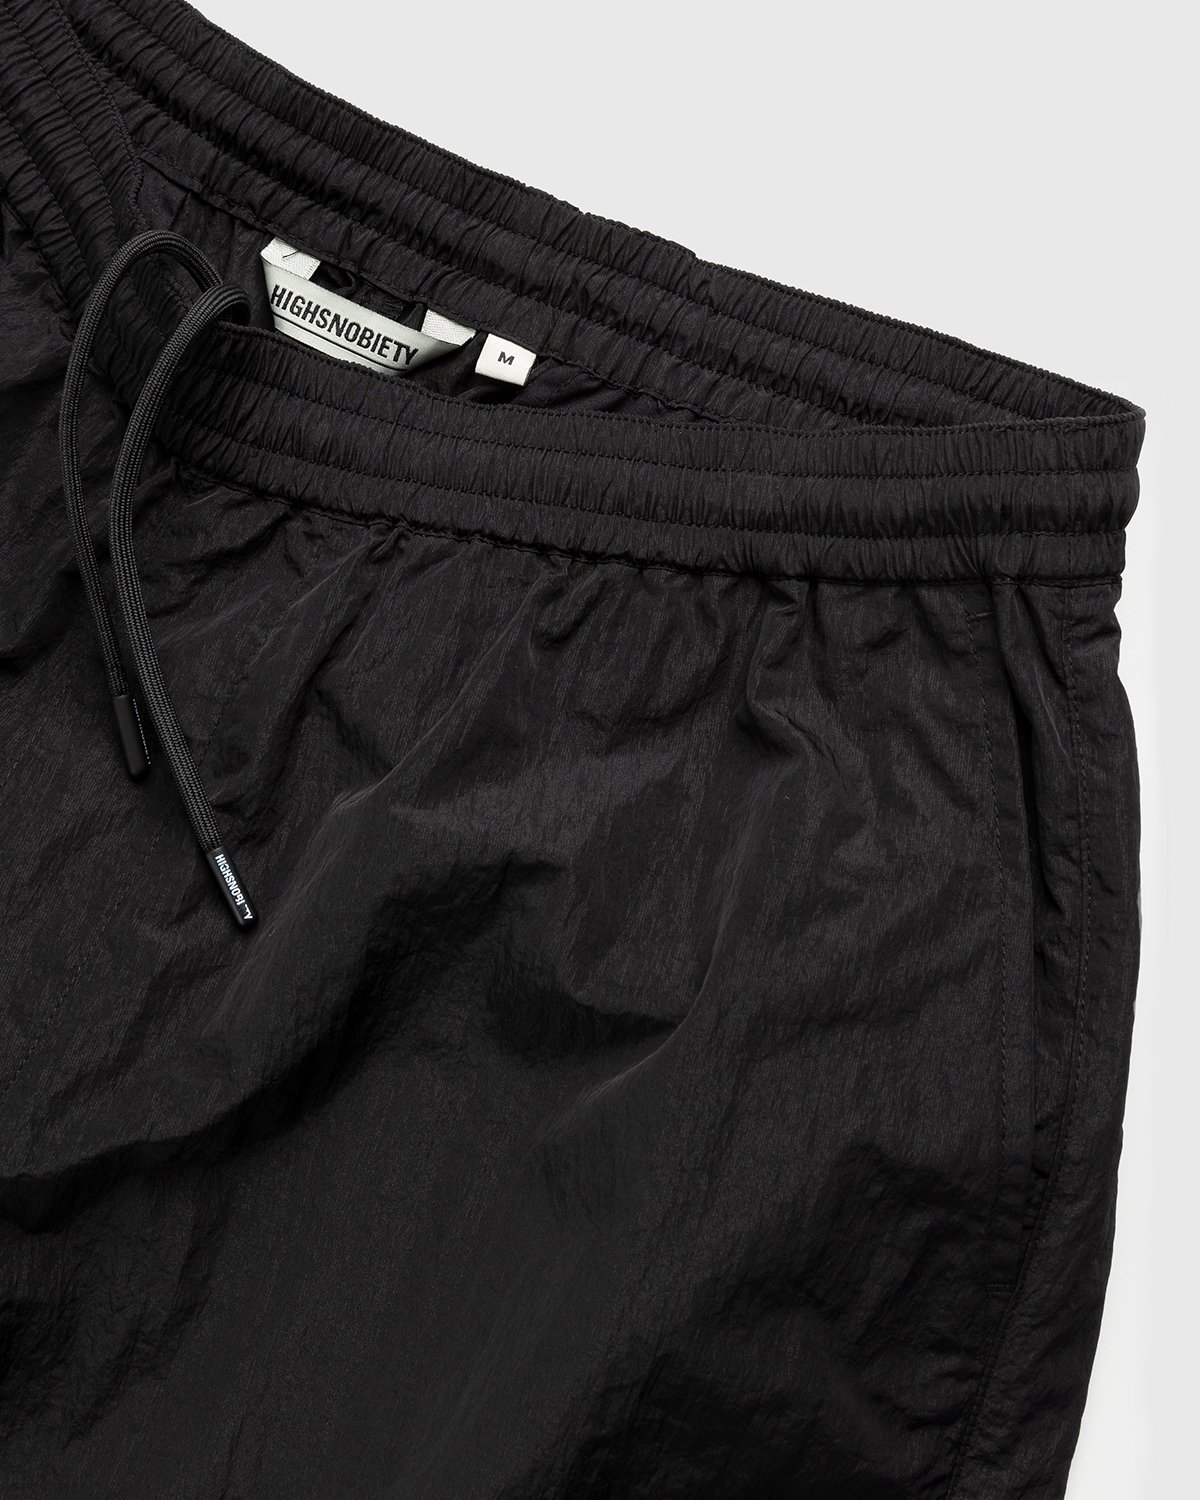 Highsnobiety - Crepe Nylon Shorts Black - Clothing - Black - Image 4